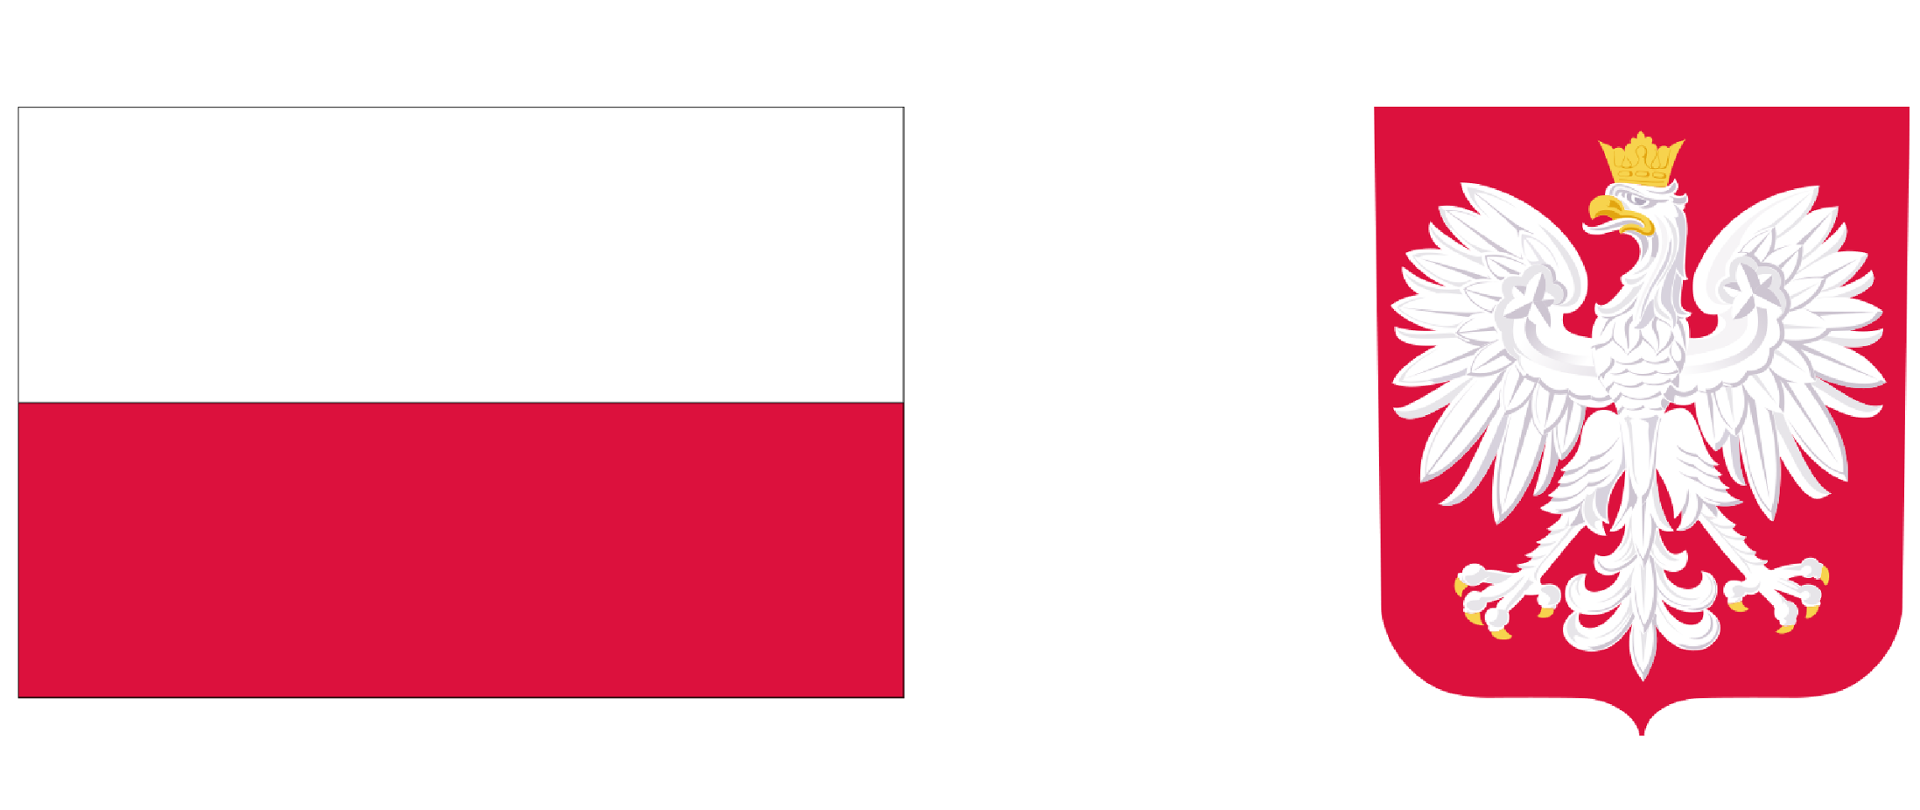 Grafika przedstawia z lewej strony biało-czerwoną flagę Rzeczypospolitej Polskiej, z prawej godło Rzeczypospolitej Polskiej - biały orzeł ze złotym dziobem i szponami oraz w złotej koronie na czerwonym tle.